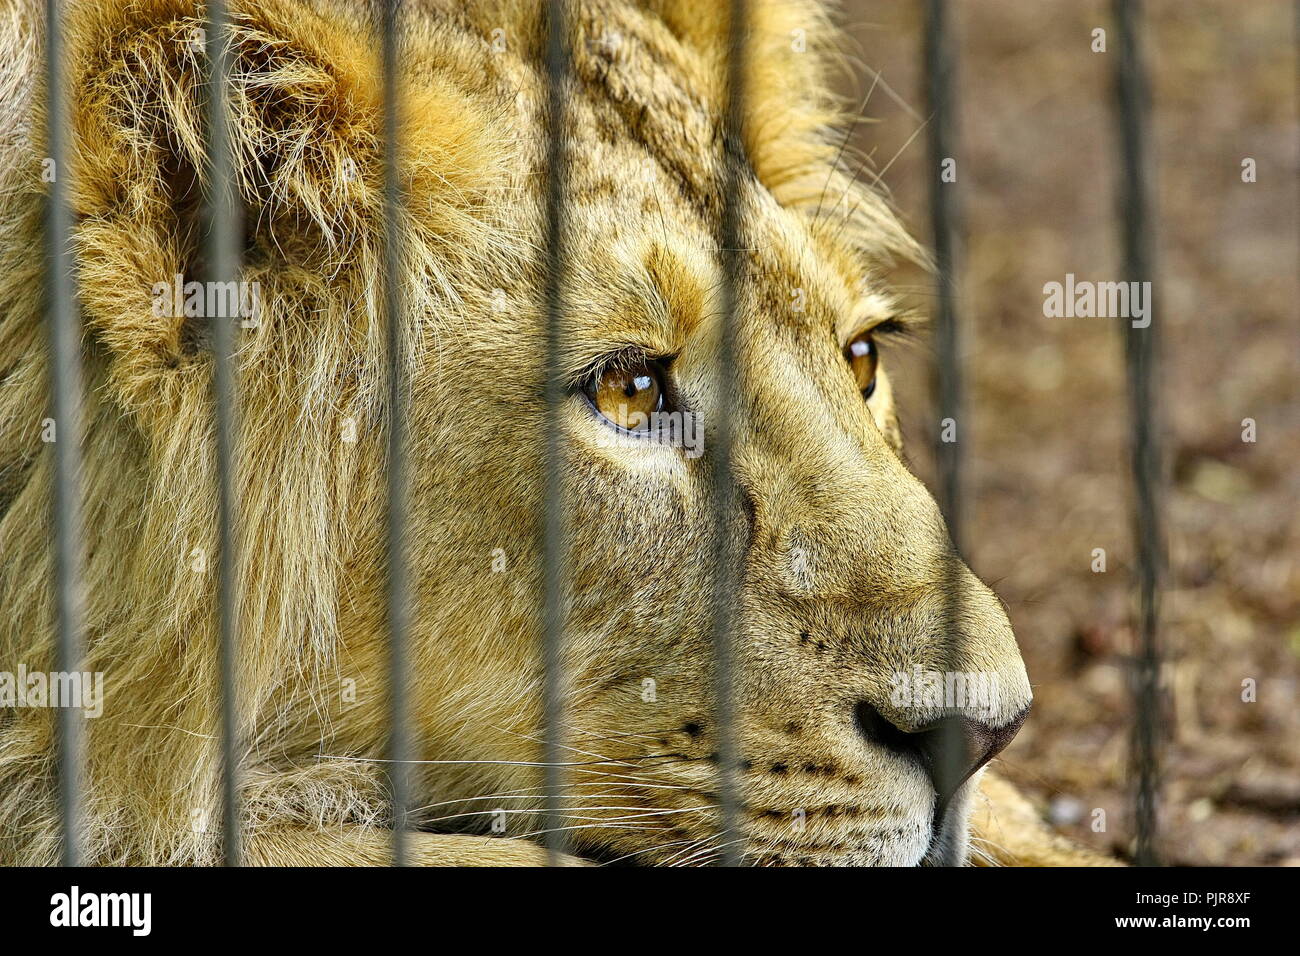 Lowen Im Zoo Kafig Traume Von Freiheit Stockfotografie Alamy